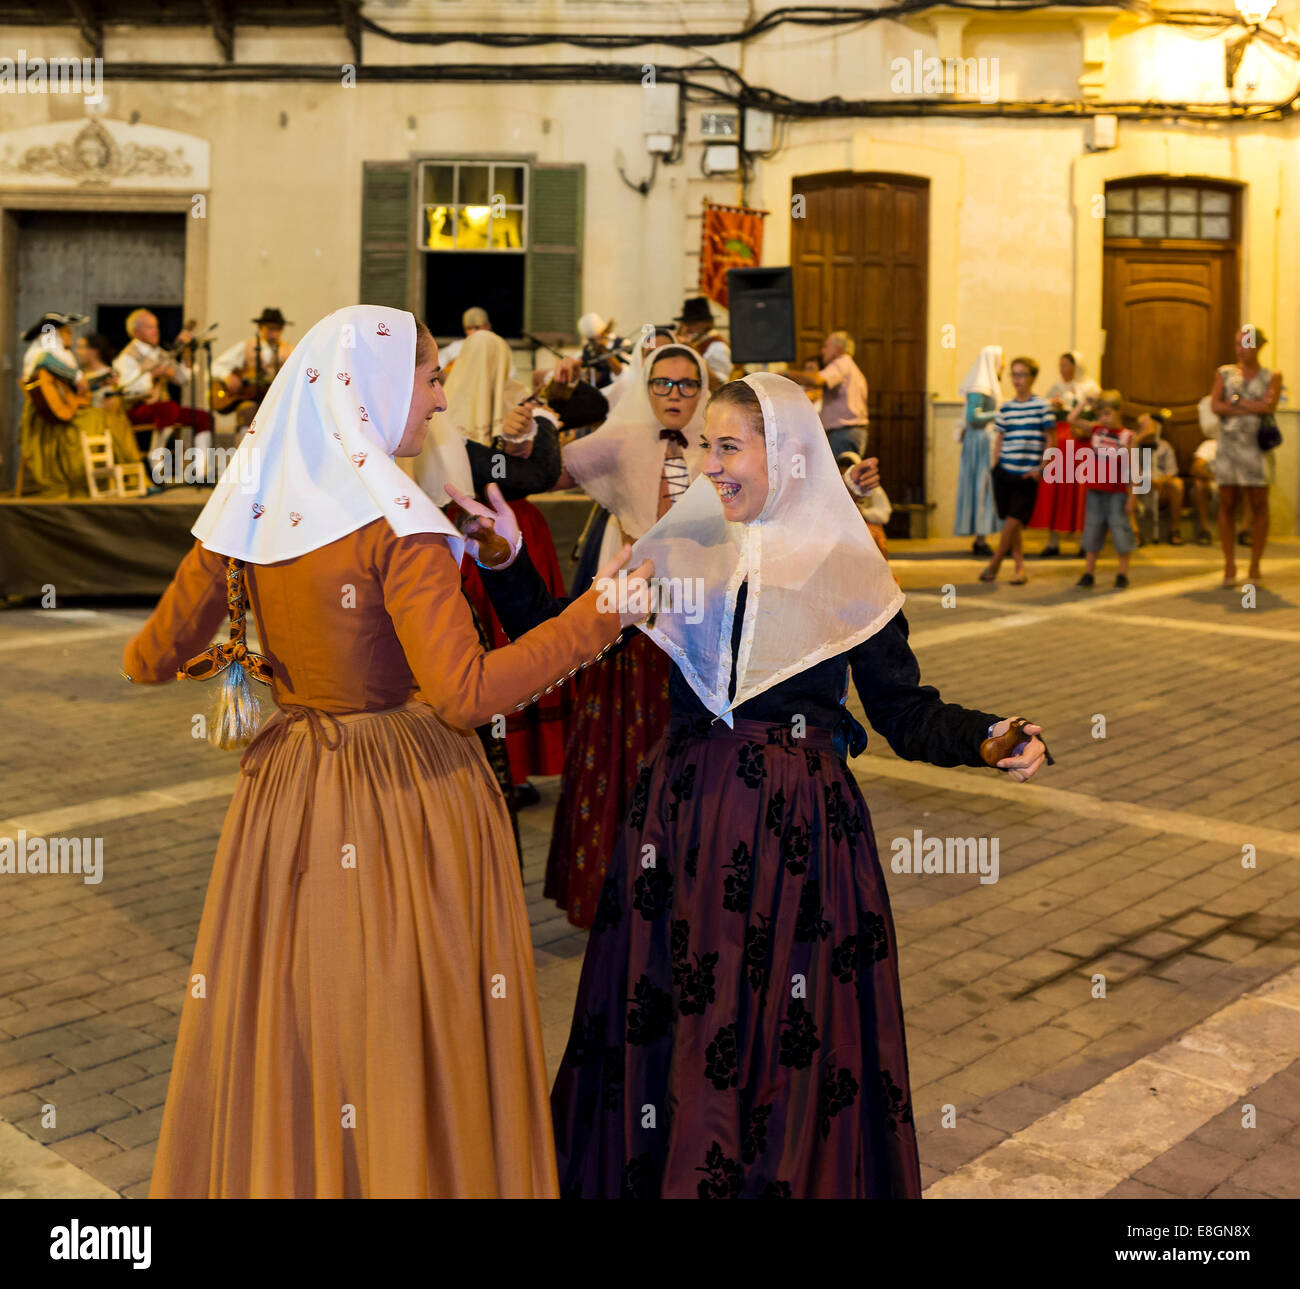 Actuación de baile público, bailarines con trajes tradicionales, Alaior,  Menorca, Menorca, Islas Baleares, España Fotografía de stock - Alamy